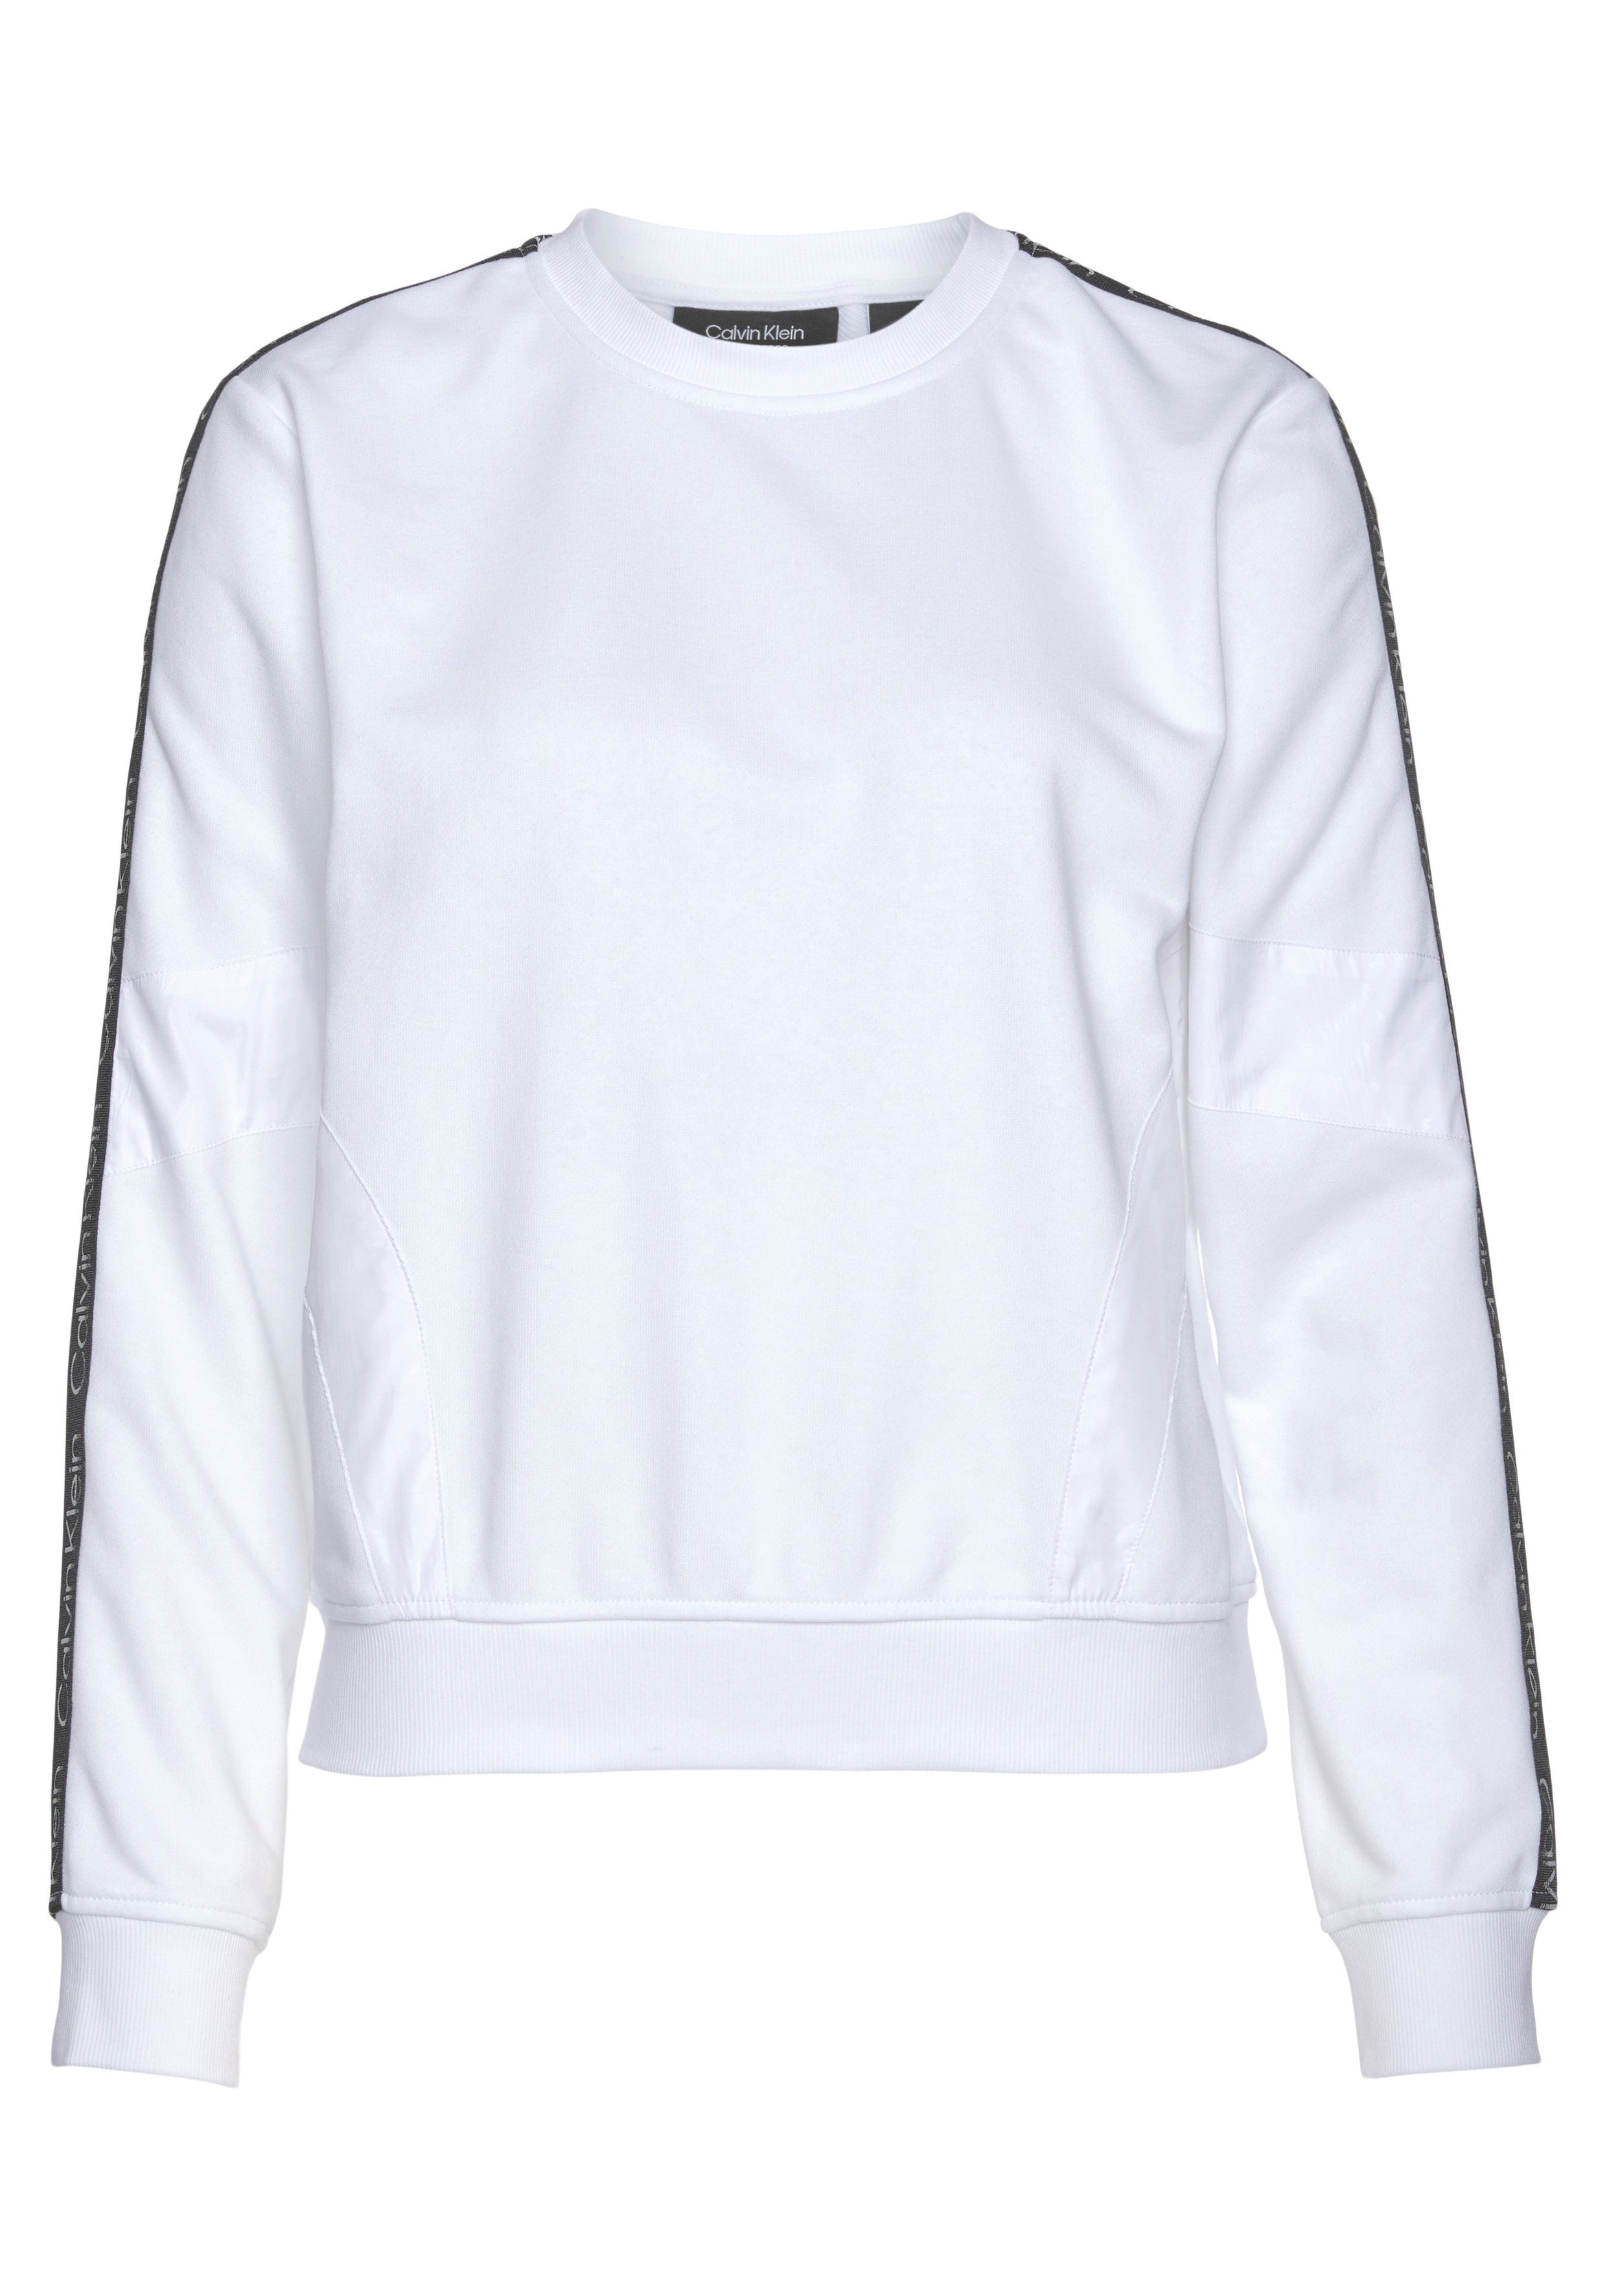 Calvin Klein Sport Sweatshirt PW - Pullover mit Calvin Klein Logoschriftzug